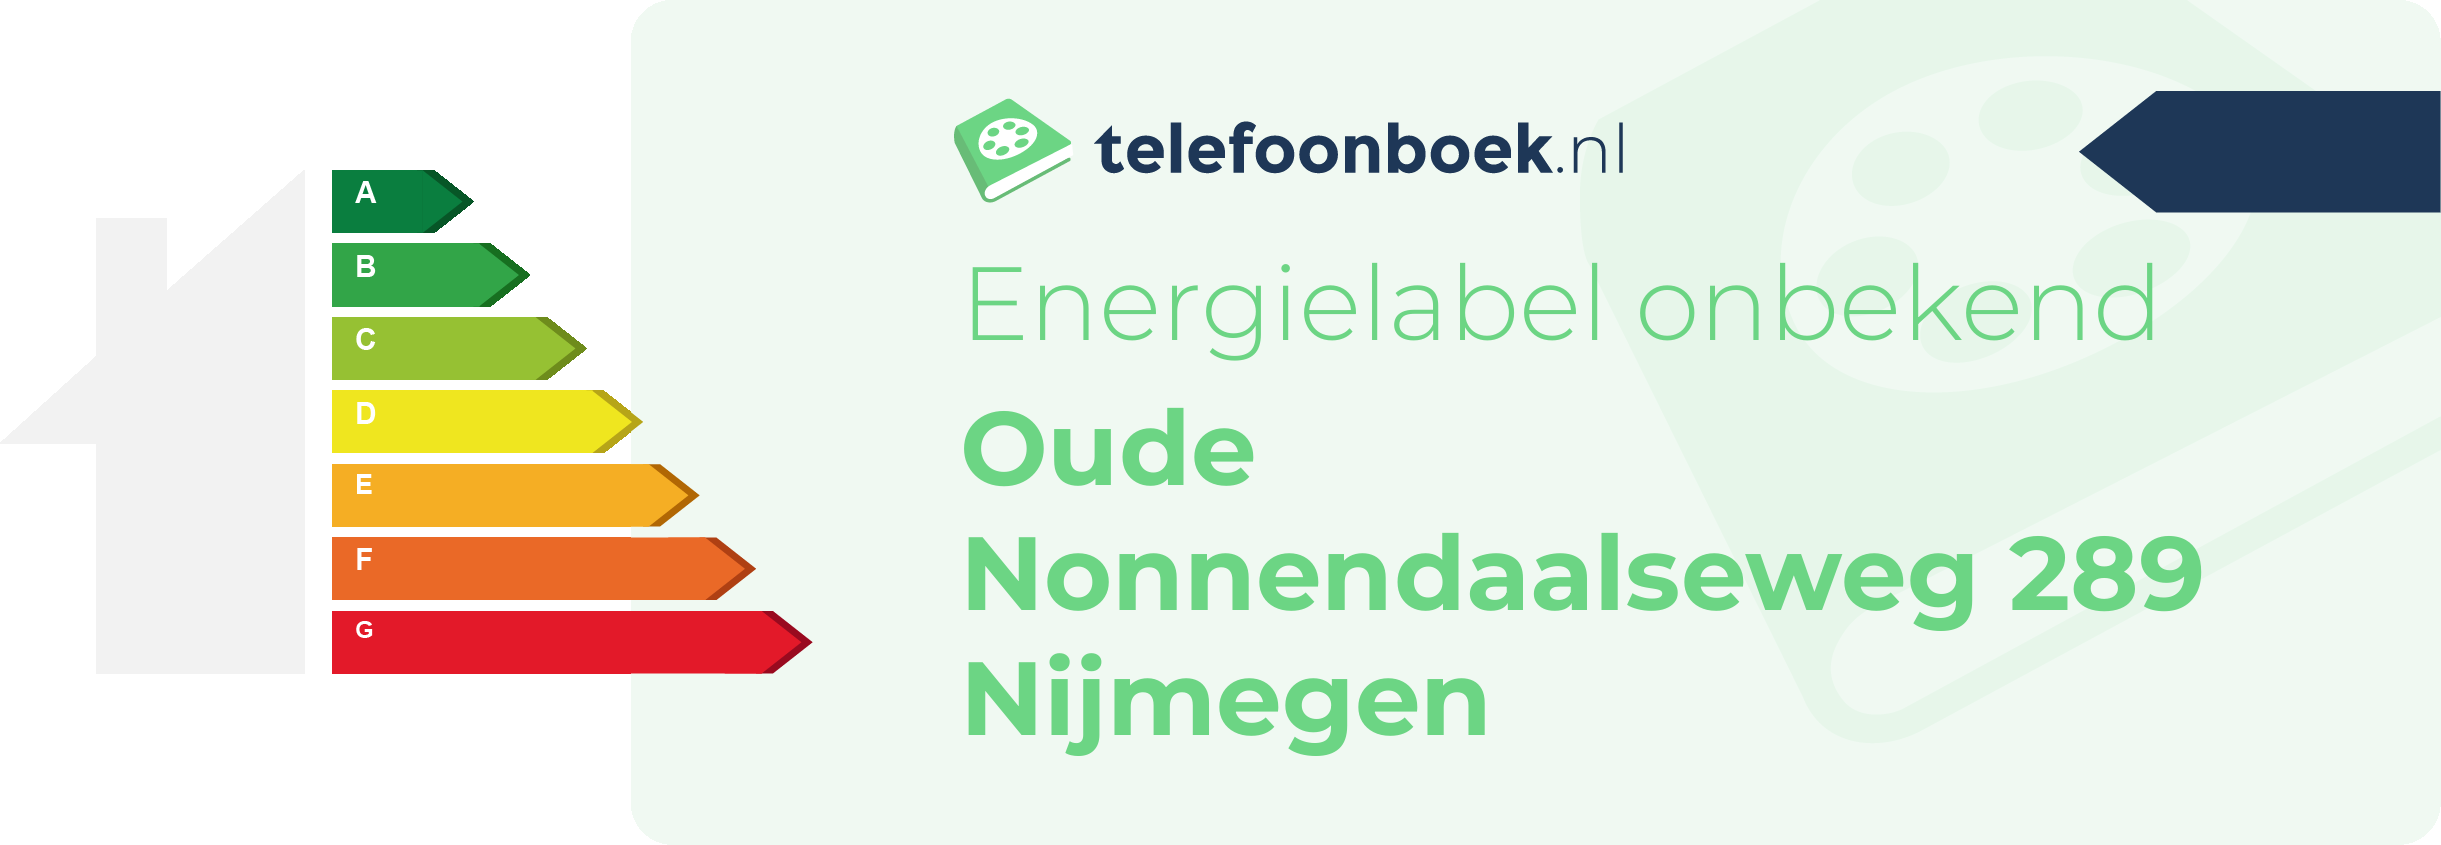 Energielabel Oude Nonnendaalseweg 289 Nijmegen